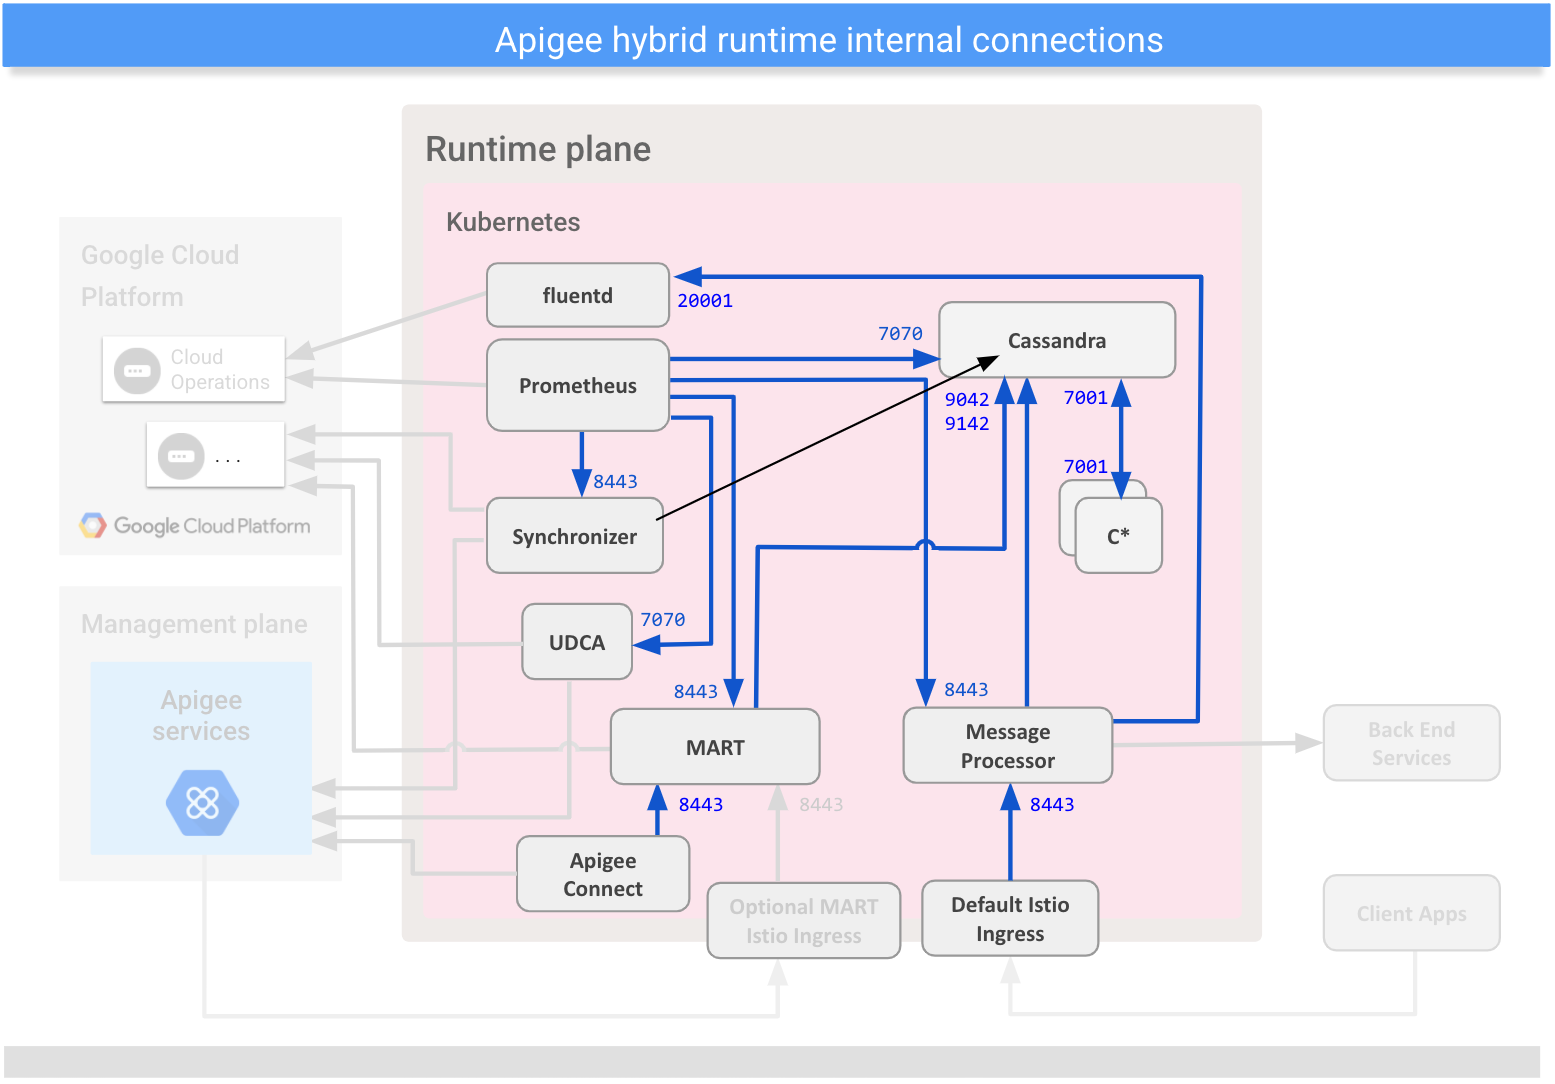 Mostra as conexões entre os componentes internos no plano do ambiente de execução híbrido.